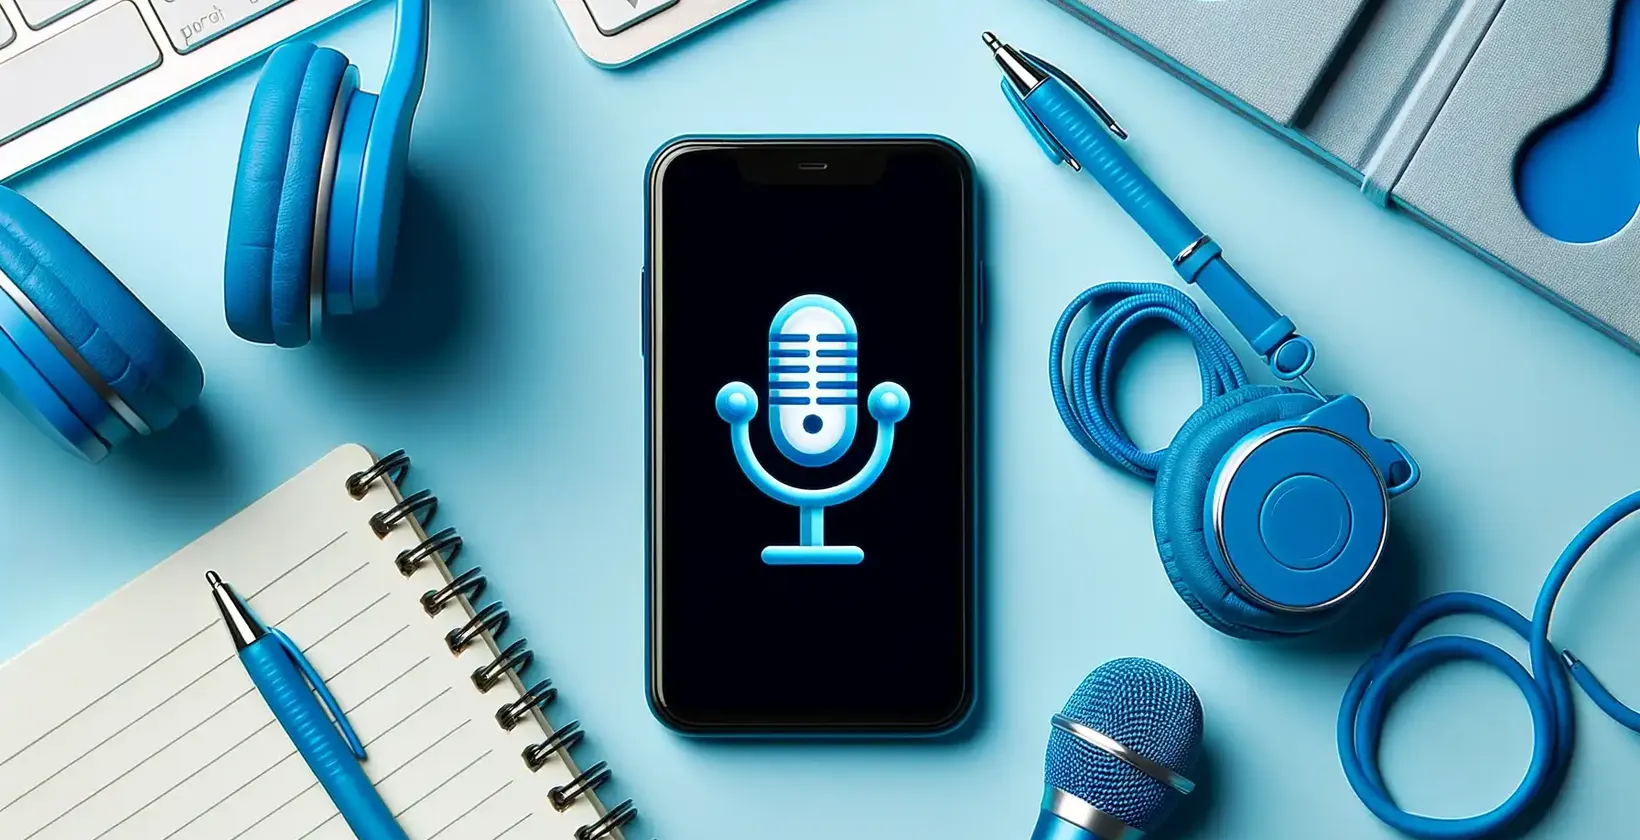 Zvuk od aplikacije do transkribiranja prikazan na pametnom telefonu s plavim slušalicama, blokom za pisanje i tehnološkim dodacima.